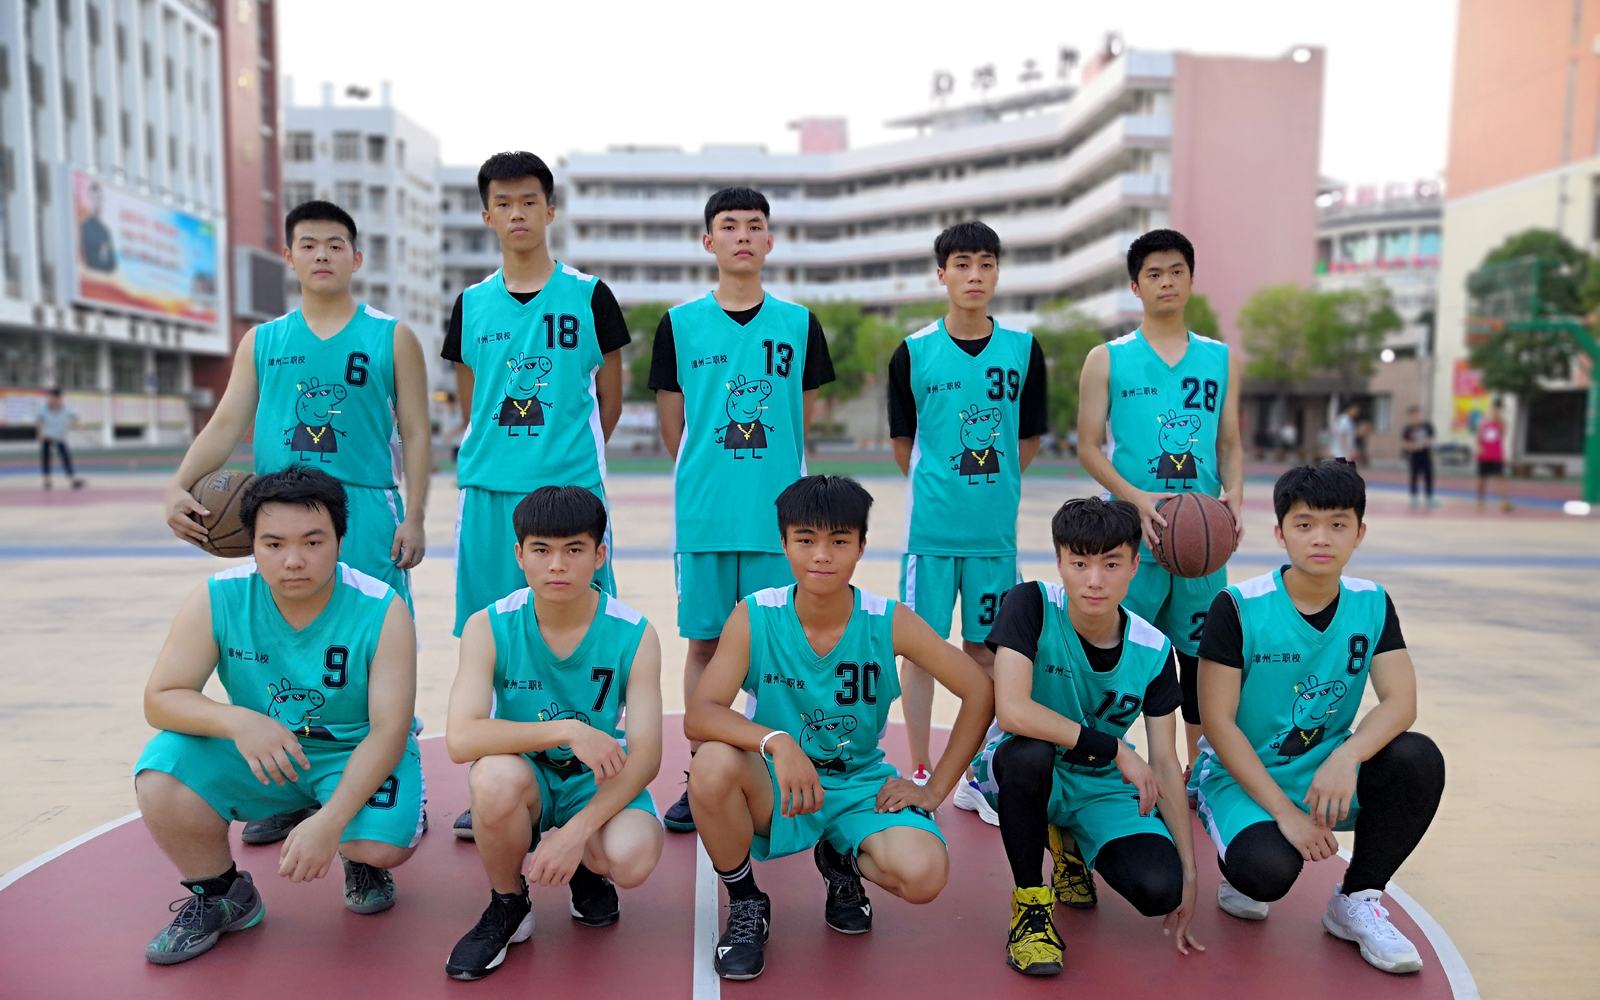 漳州二职校举行2018年水仙花杯学生篮球联赛